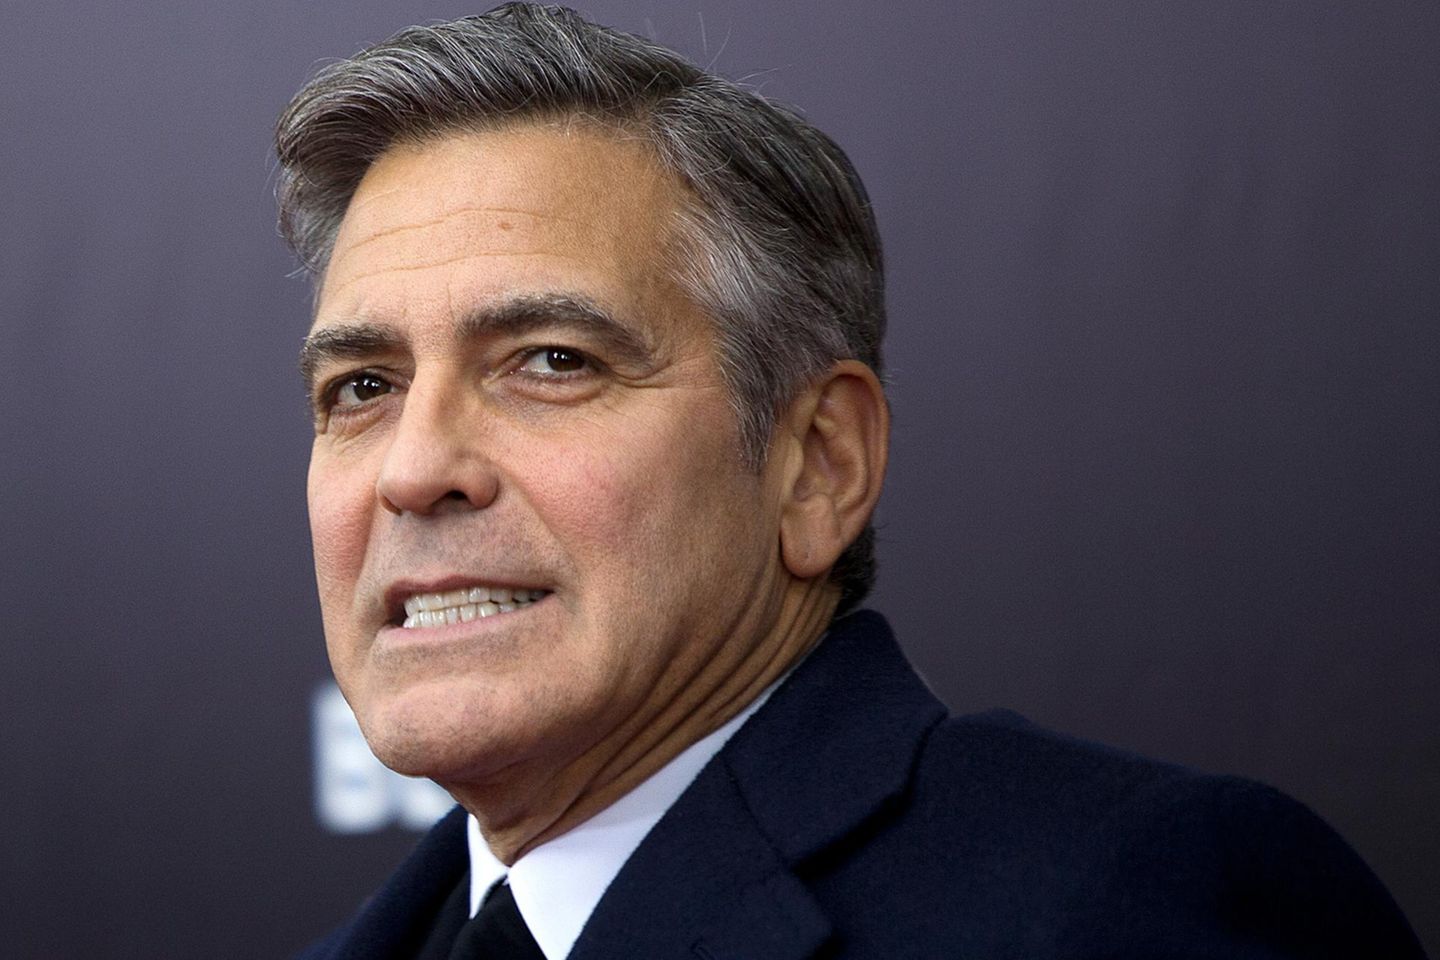 George Clooney a primit o ofertă de 35 de milioane de dolari pentru o zi de muncă. Actorul a refuzat-o